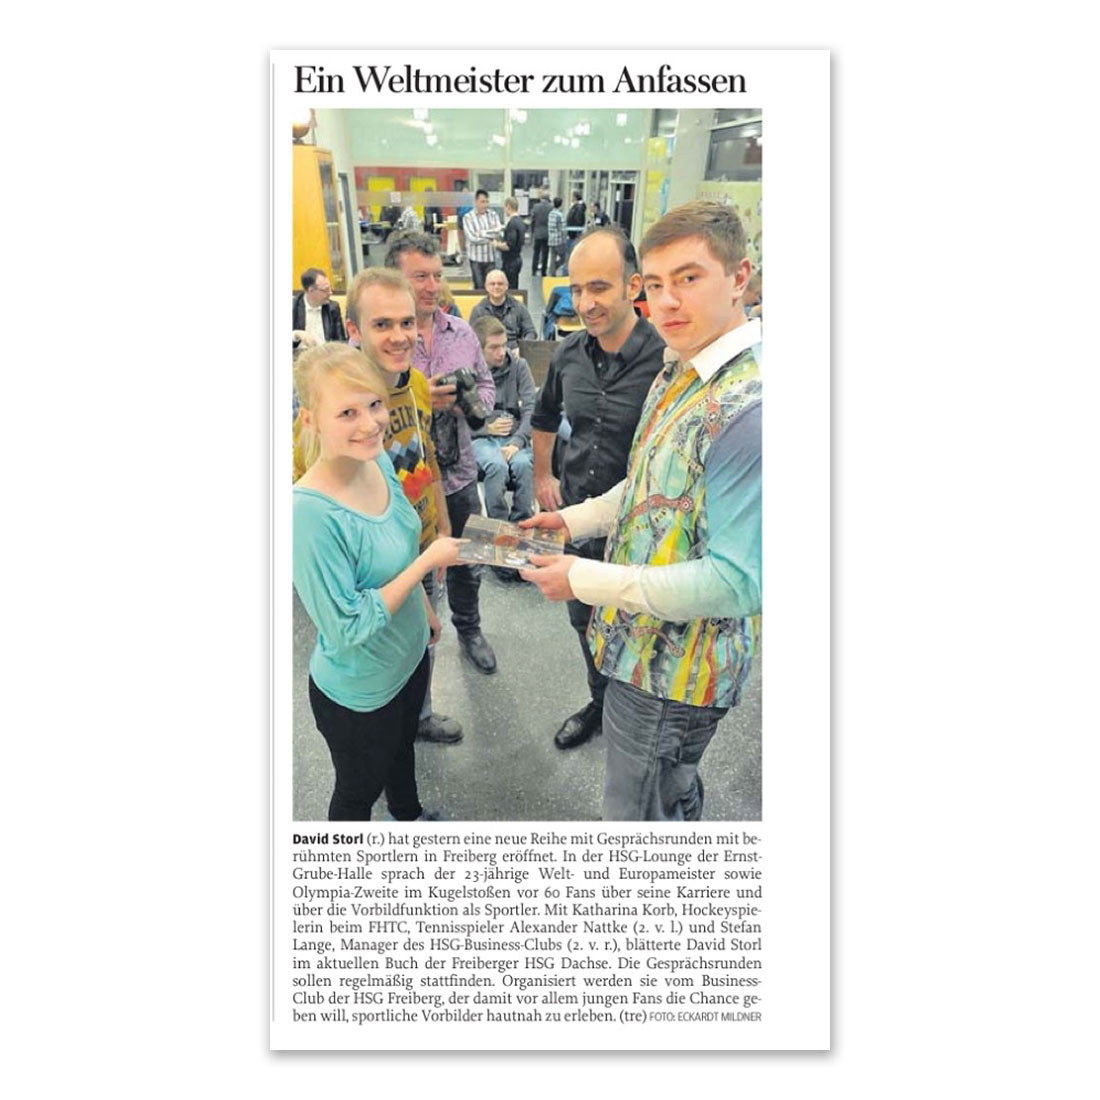 GERMENS artfashion - Freie Presse Chemnitz - März 2014